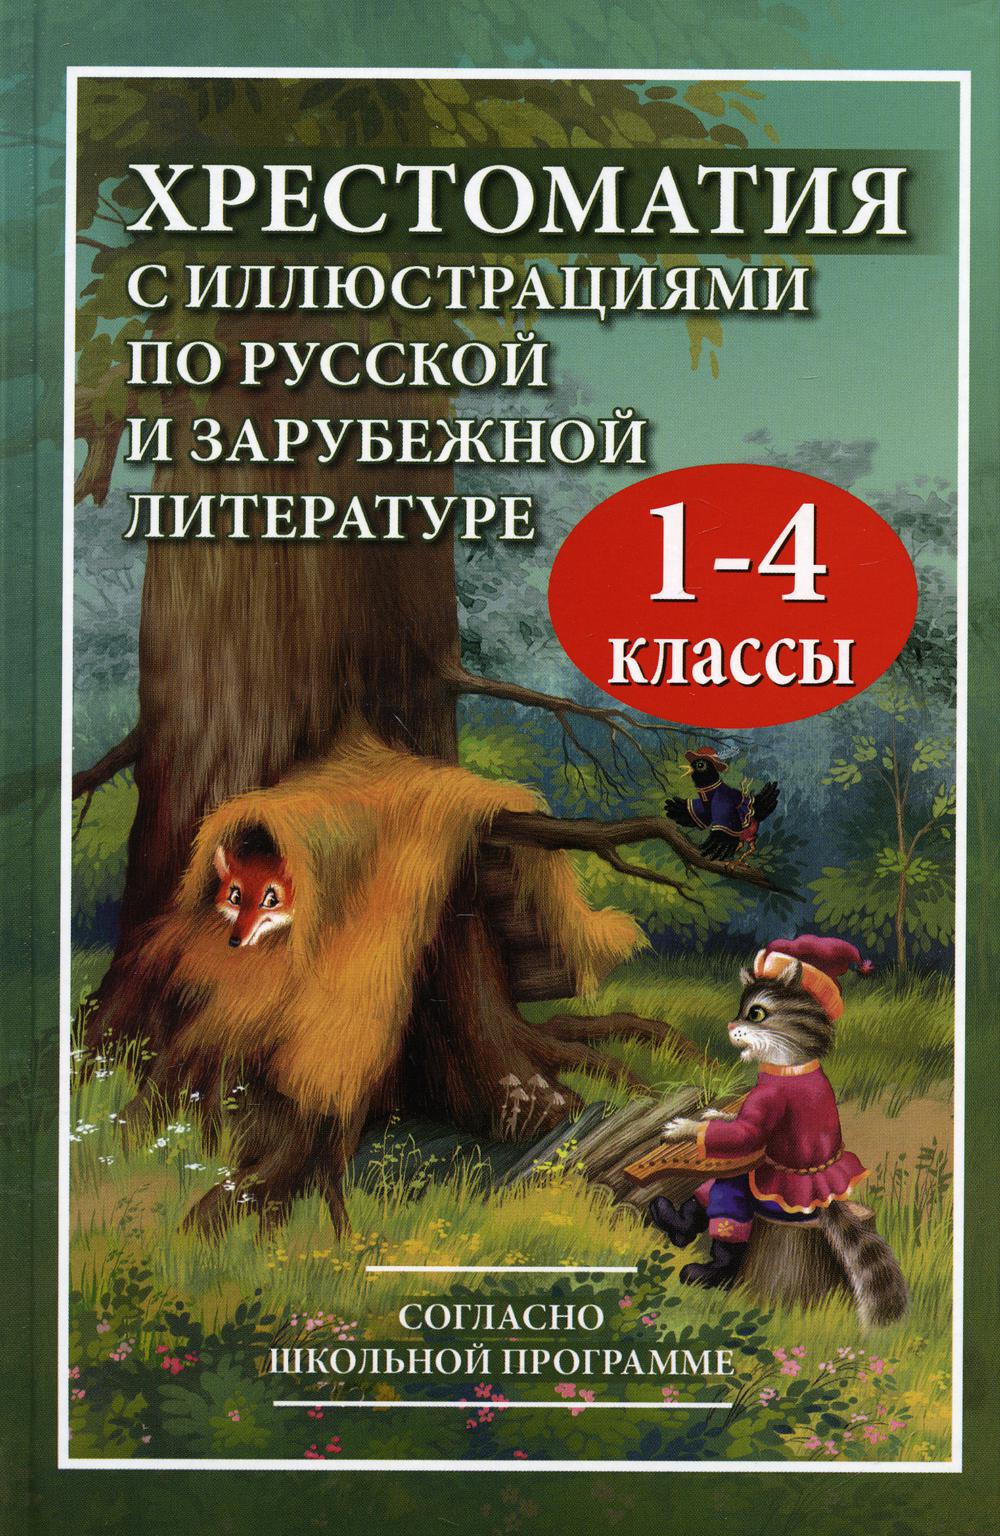 Хрестоматия с иллюстрациями по русской и зарубежной литературе для 1-4